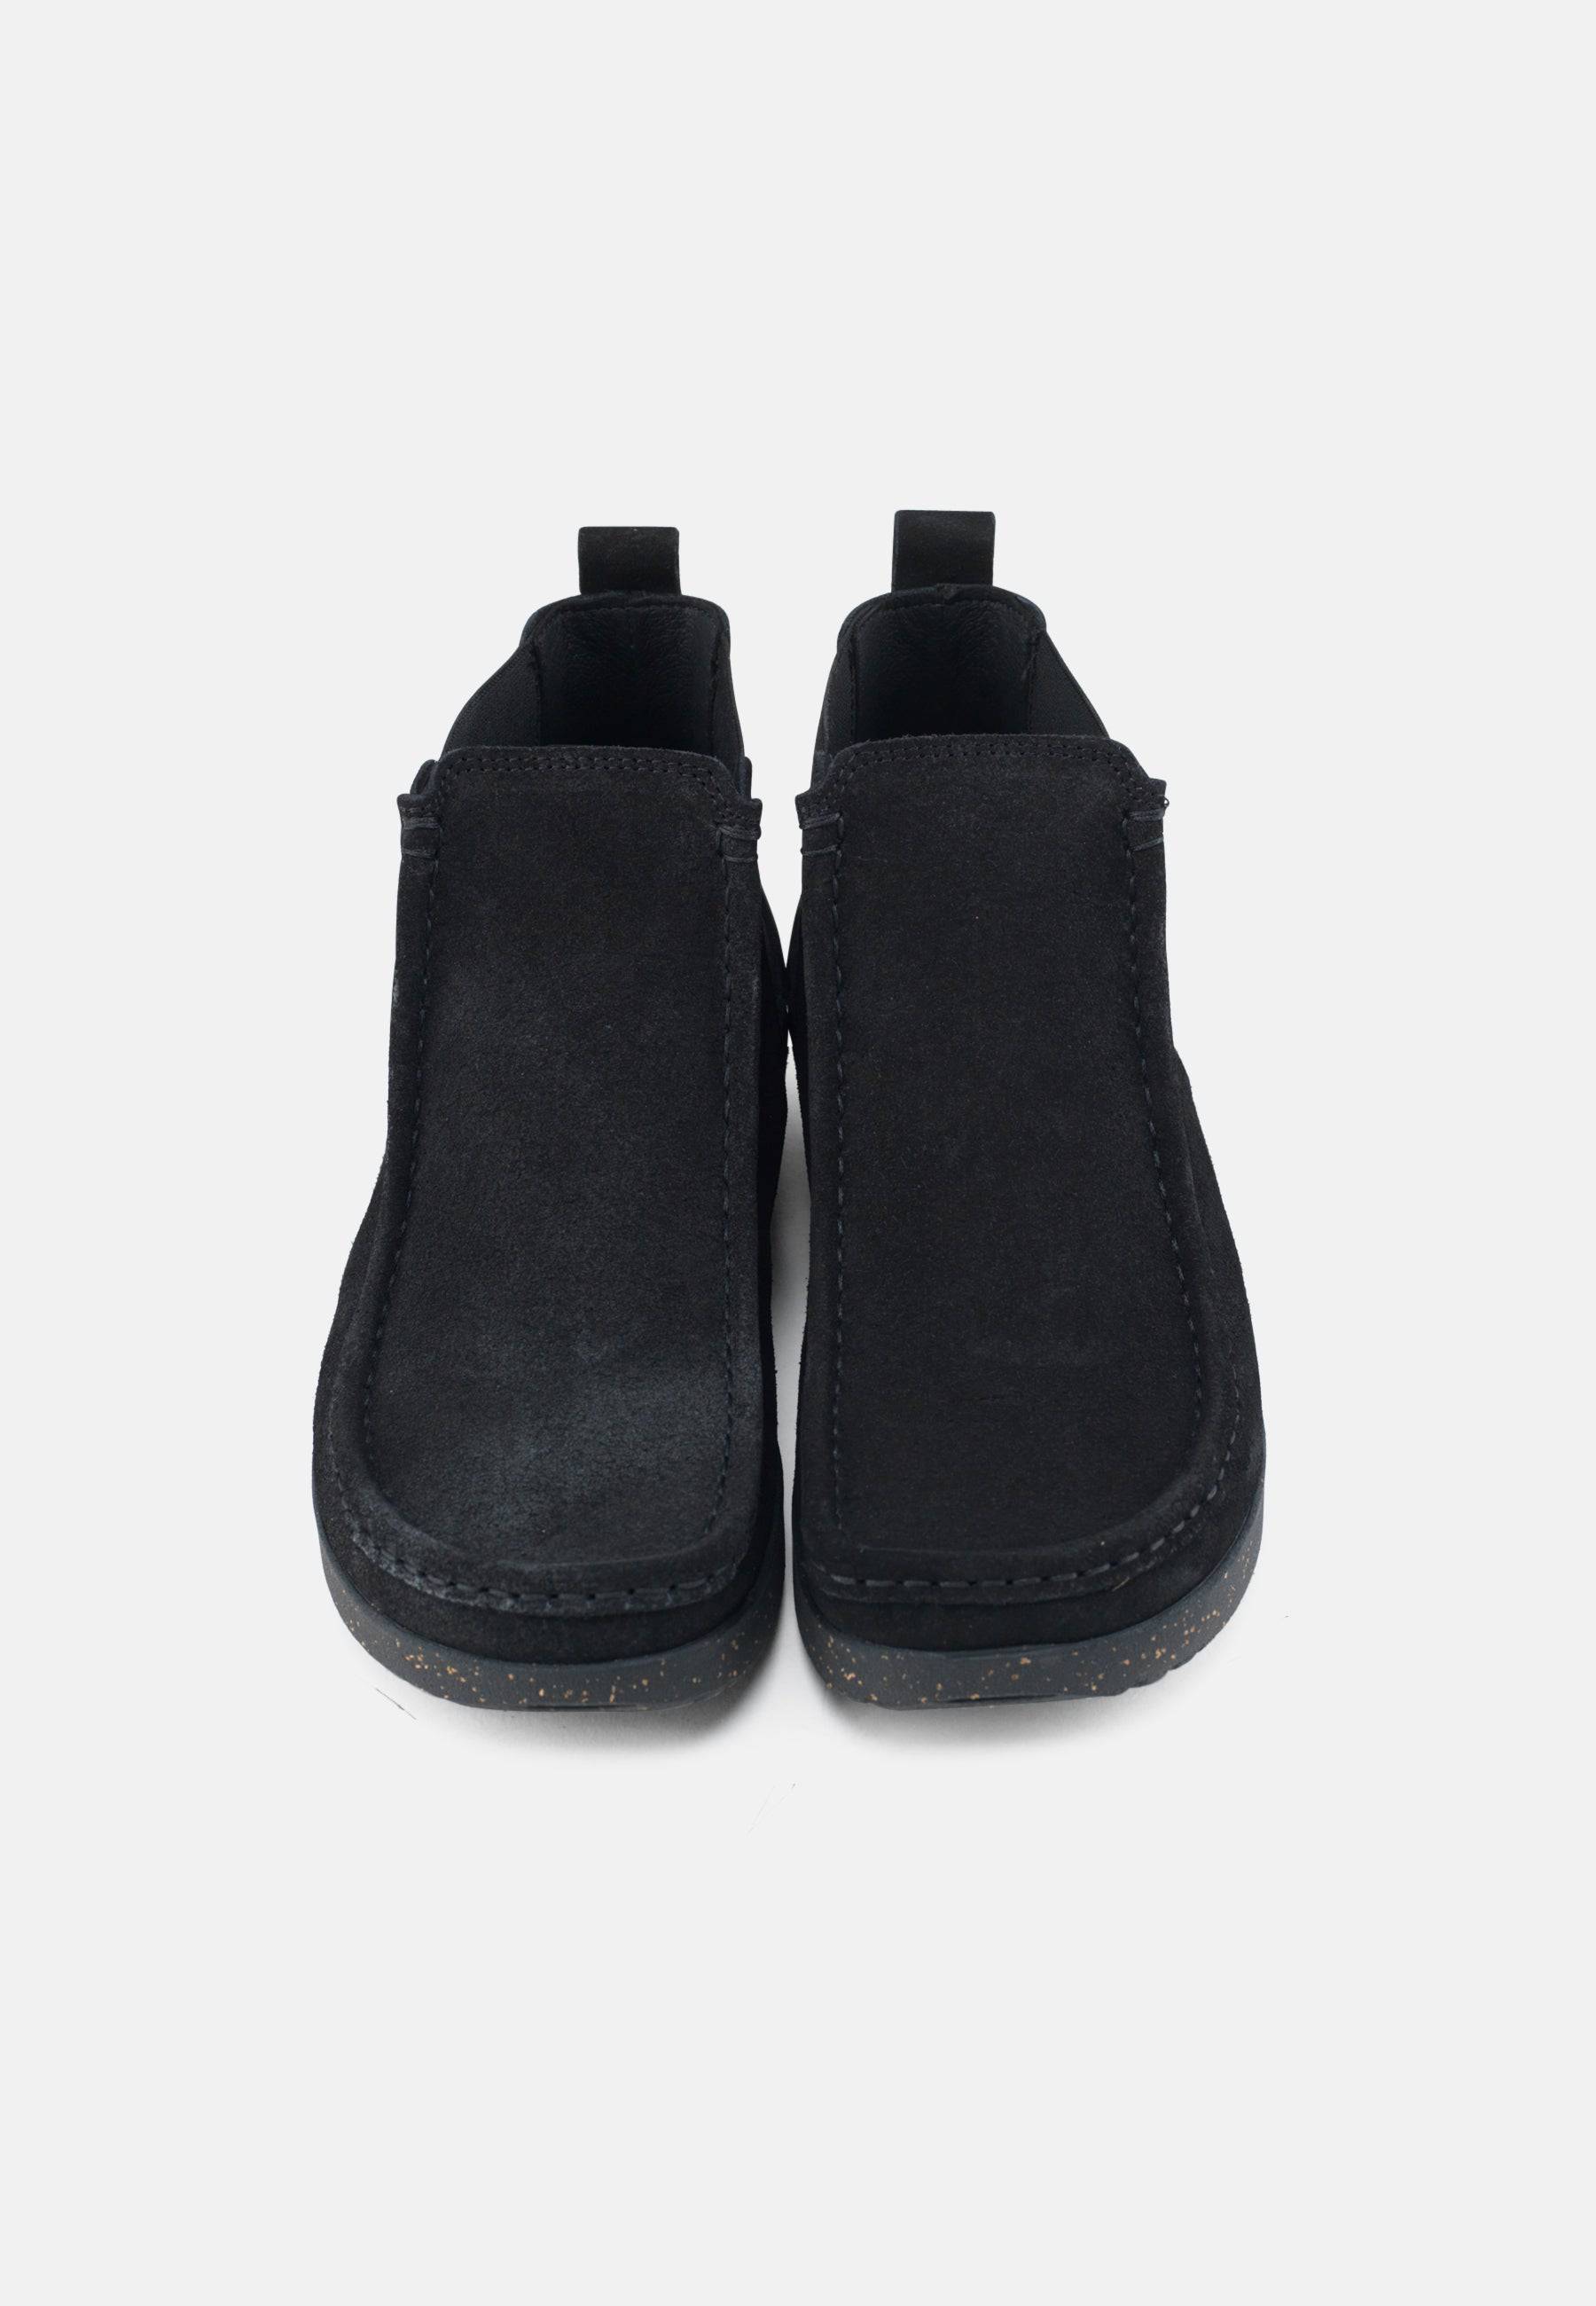 Ester Støvle Suede - Black - Nature Footwear